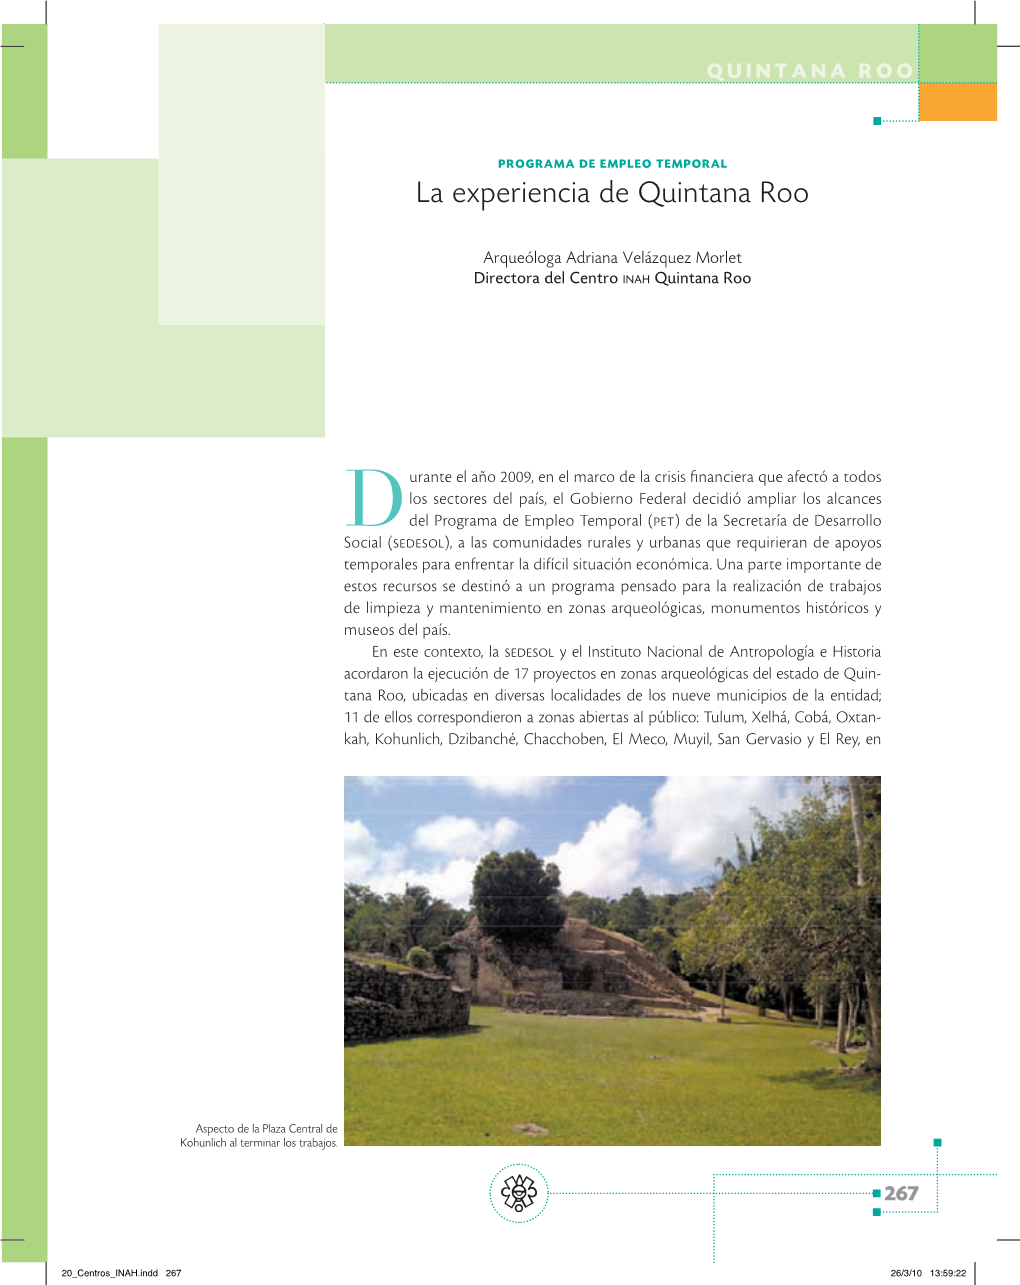 La Experiencia De Quintana Roo